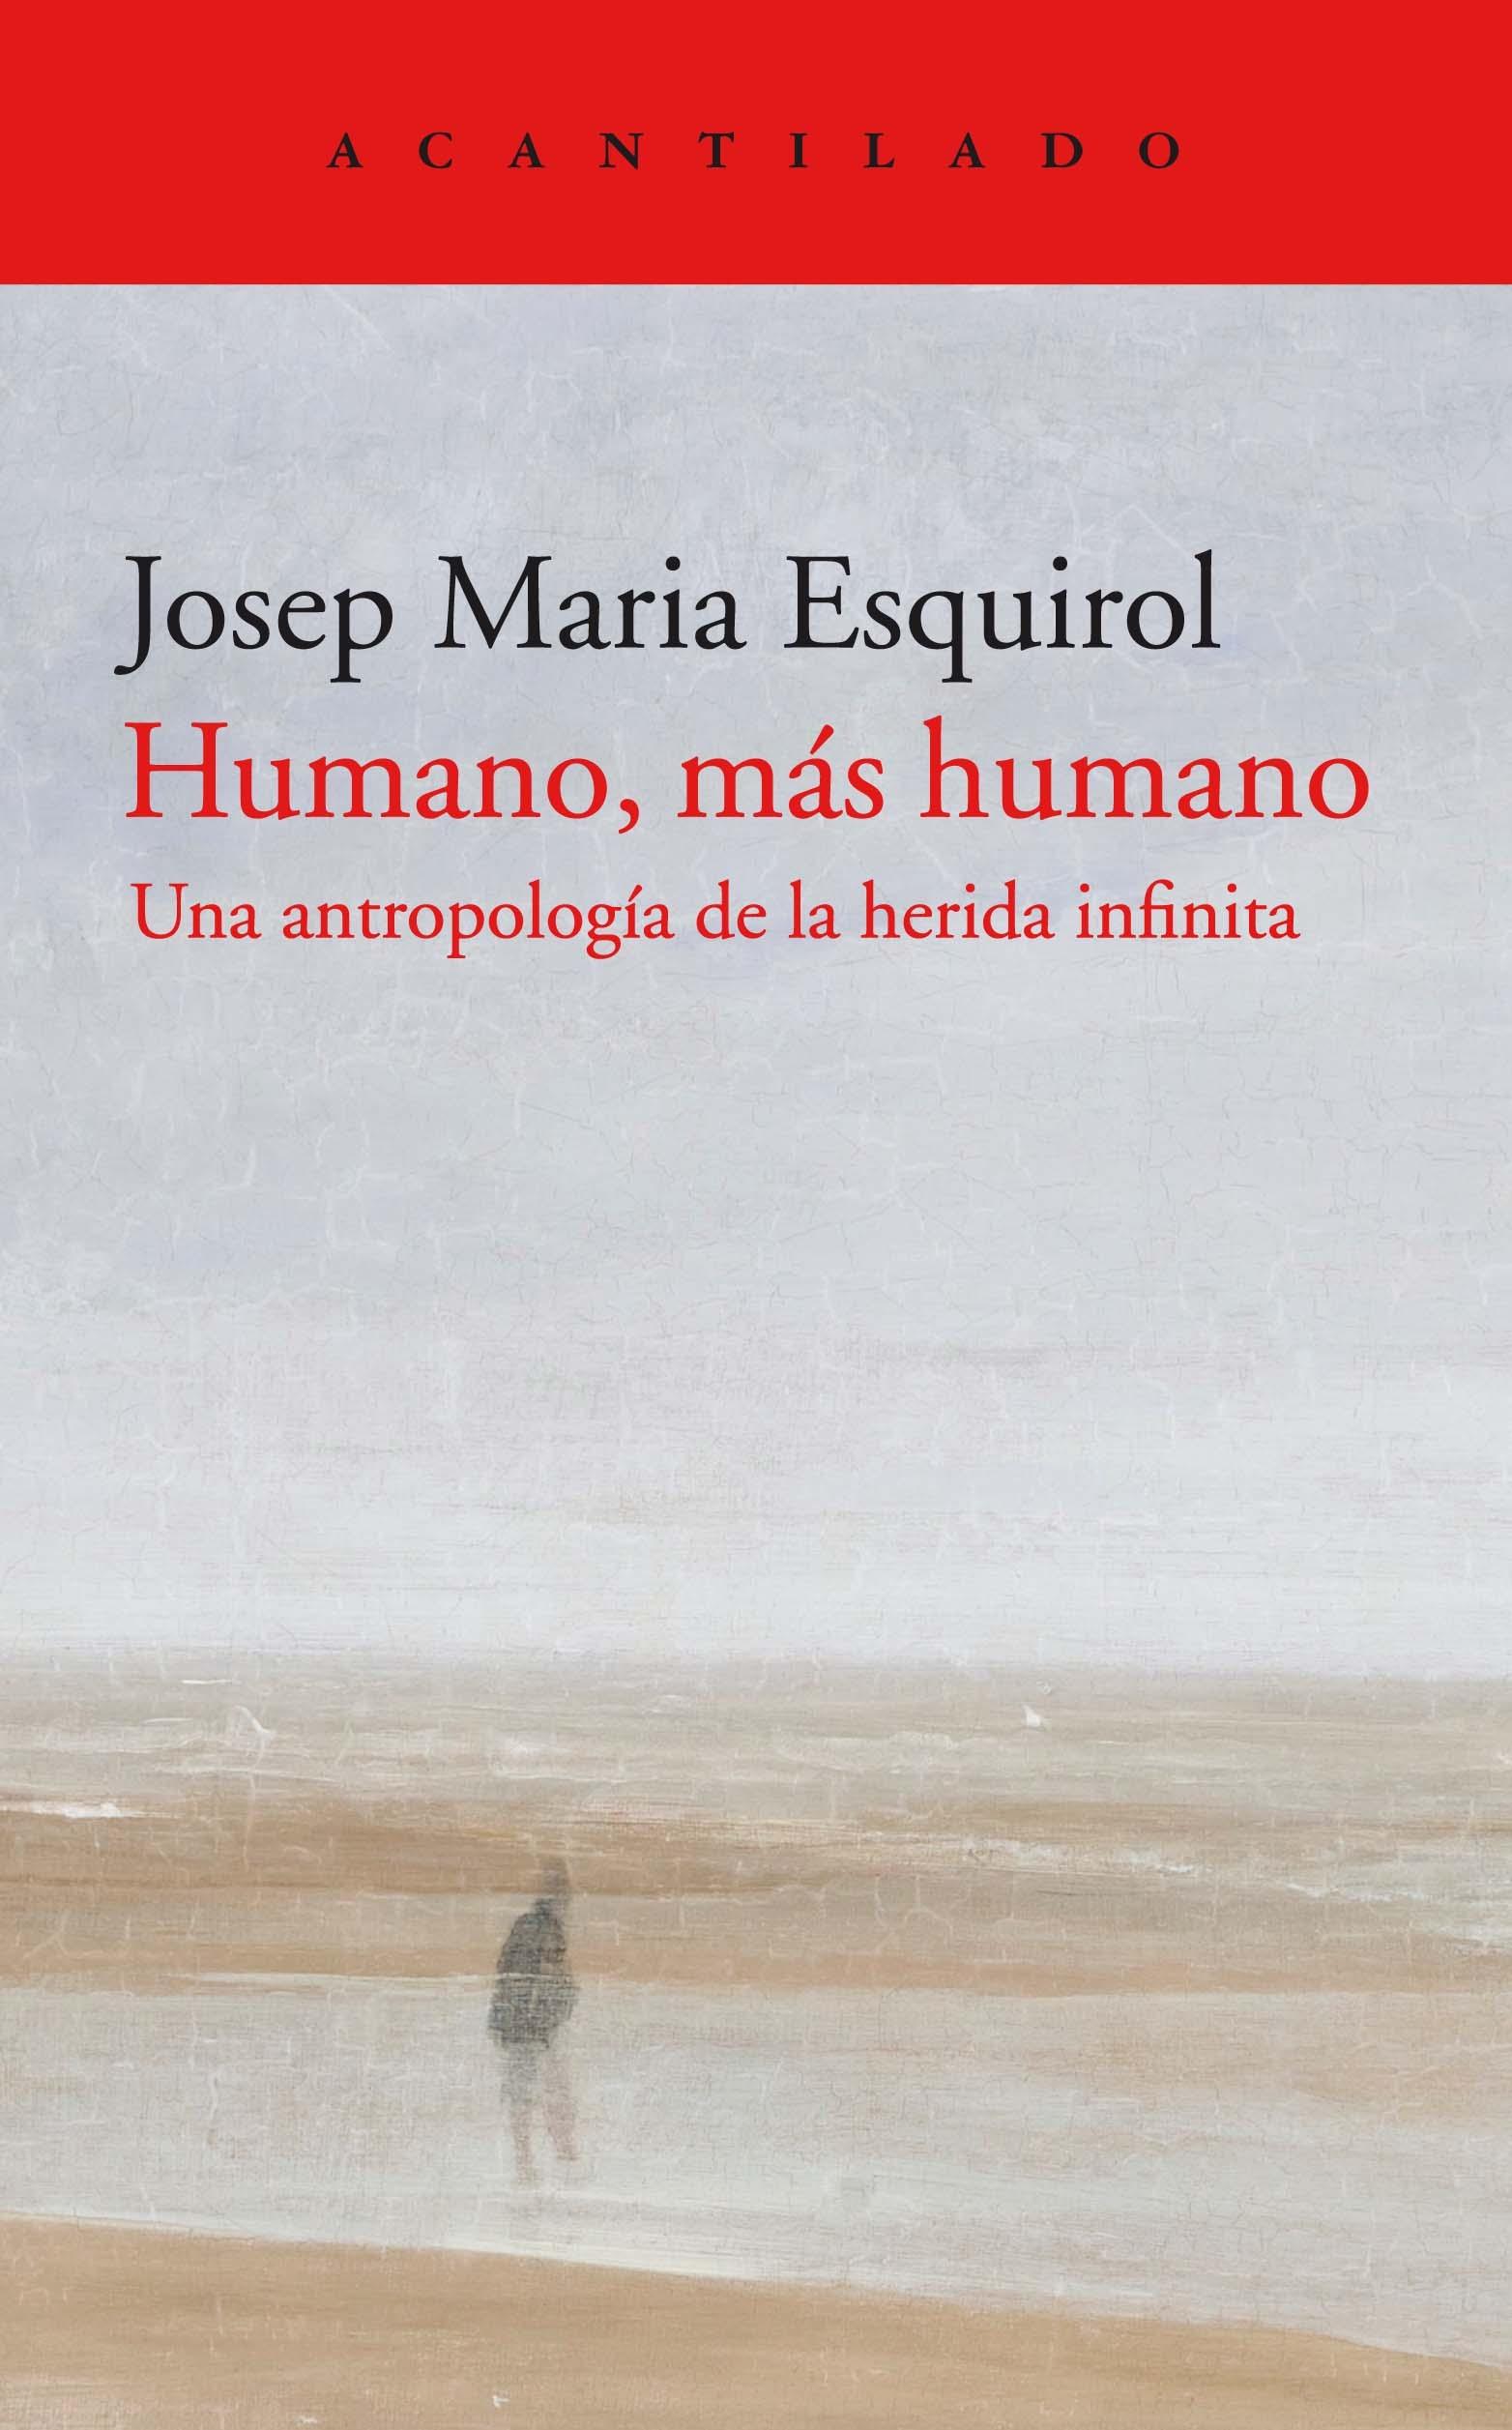 Imagen de portada del libro Humano, más humano